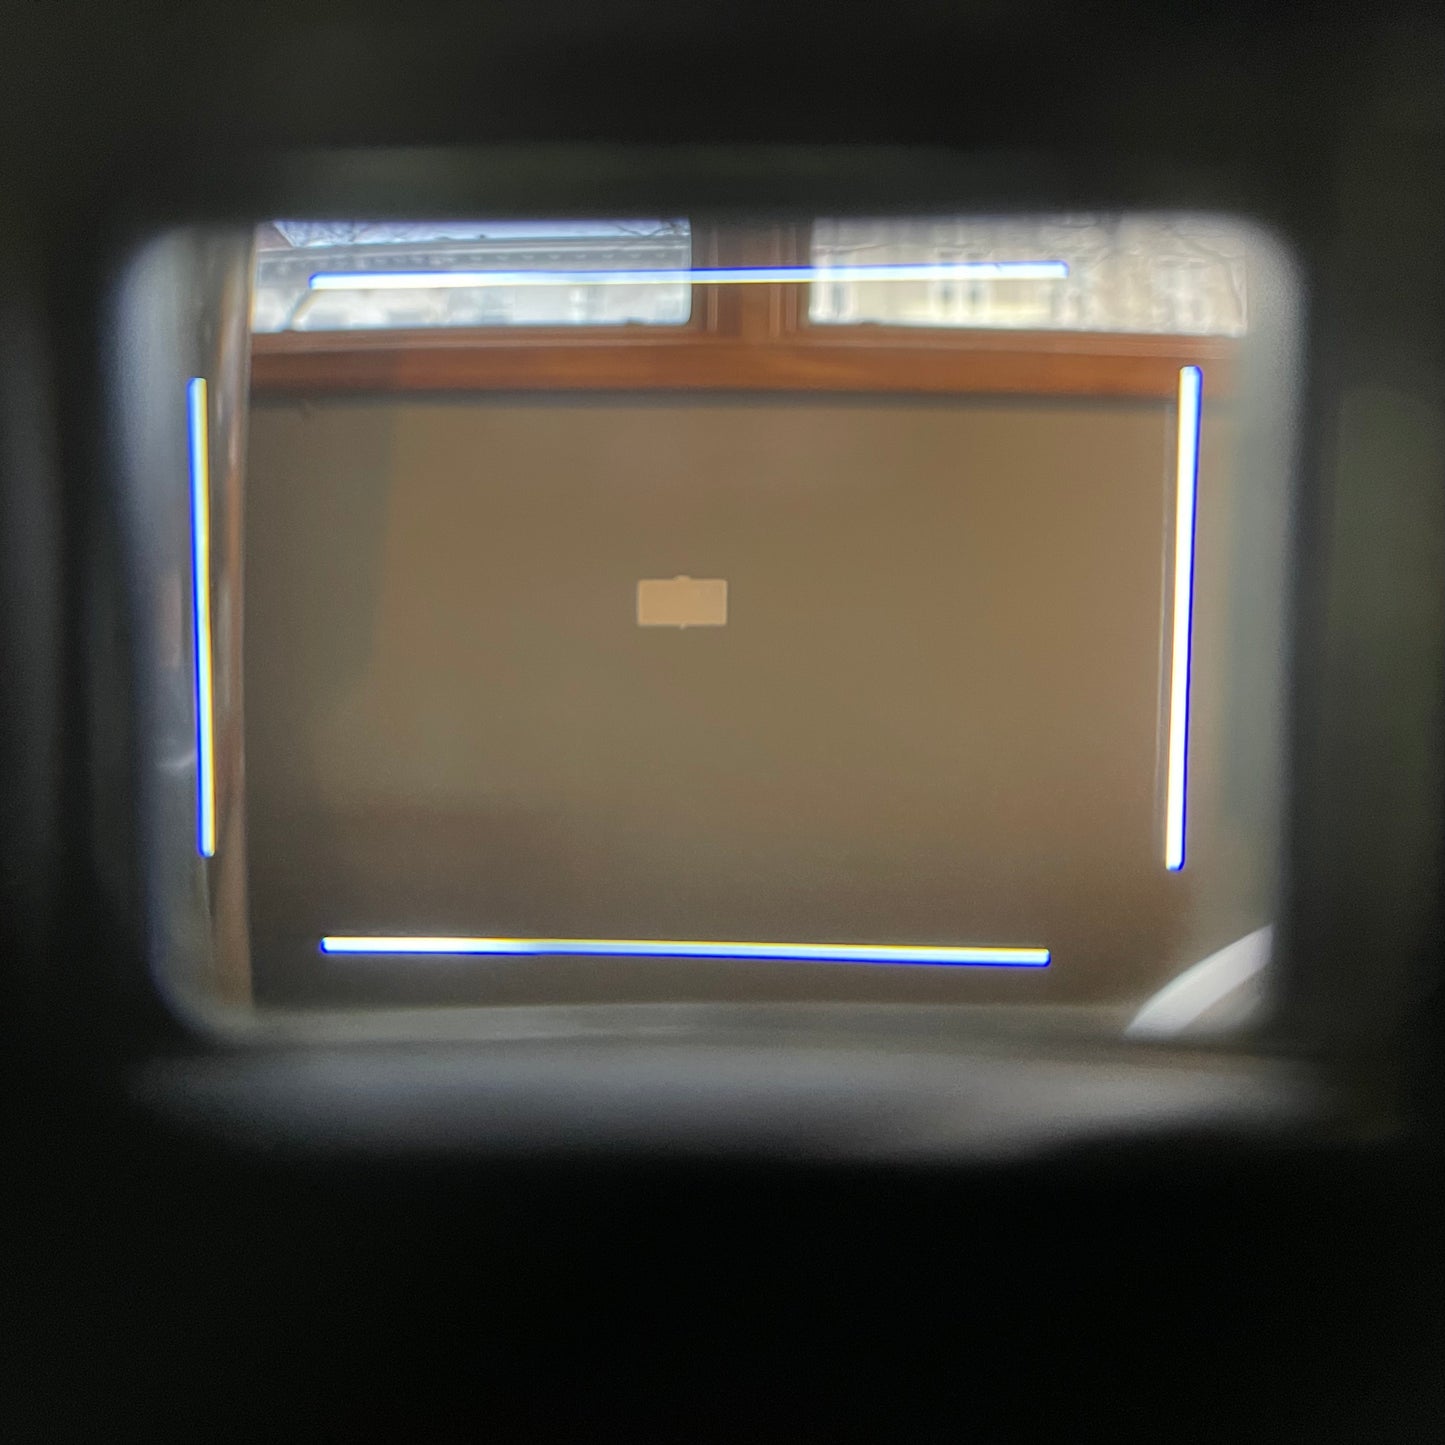 DAG Frame-Lighter for All Leica M Cameras (Except M5)